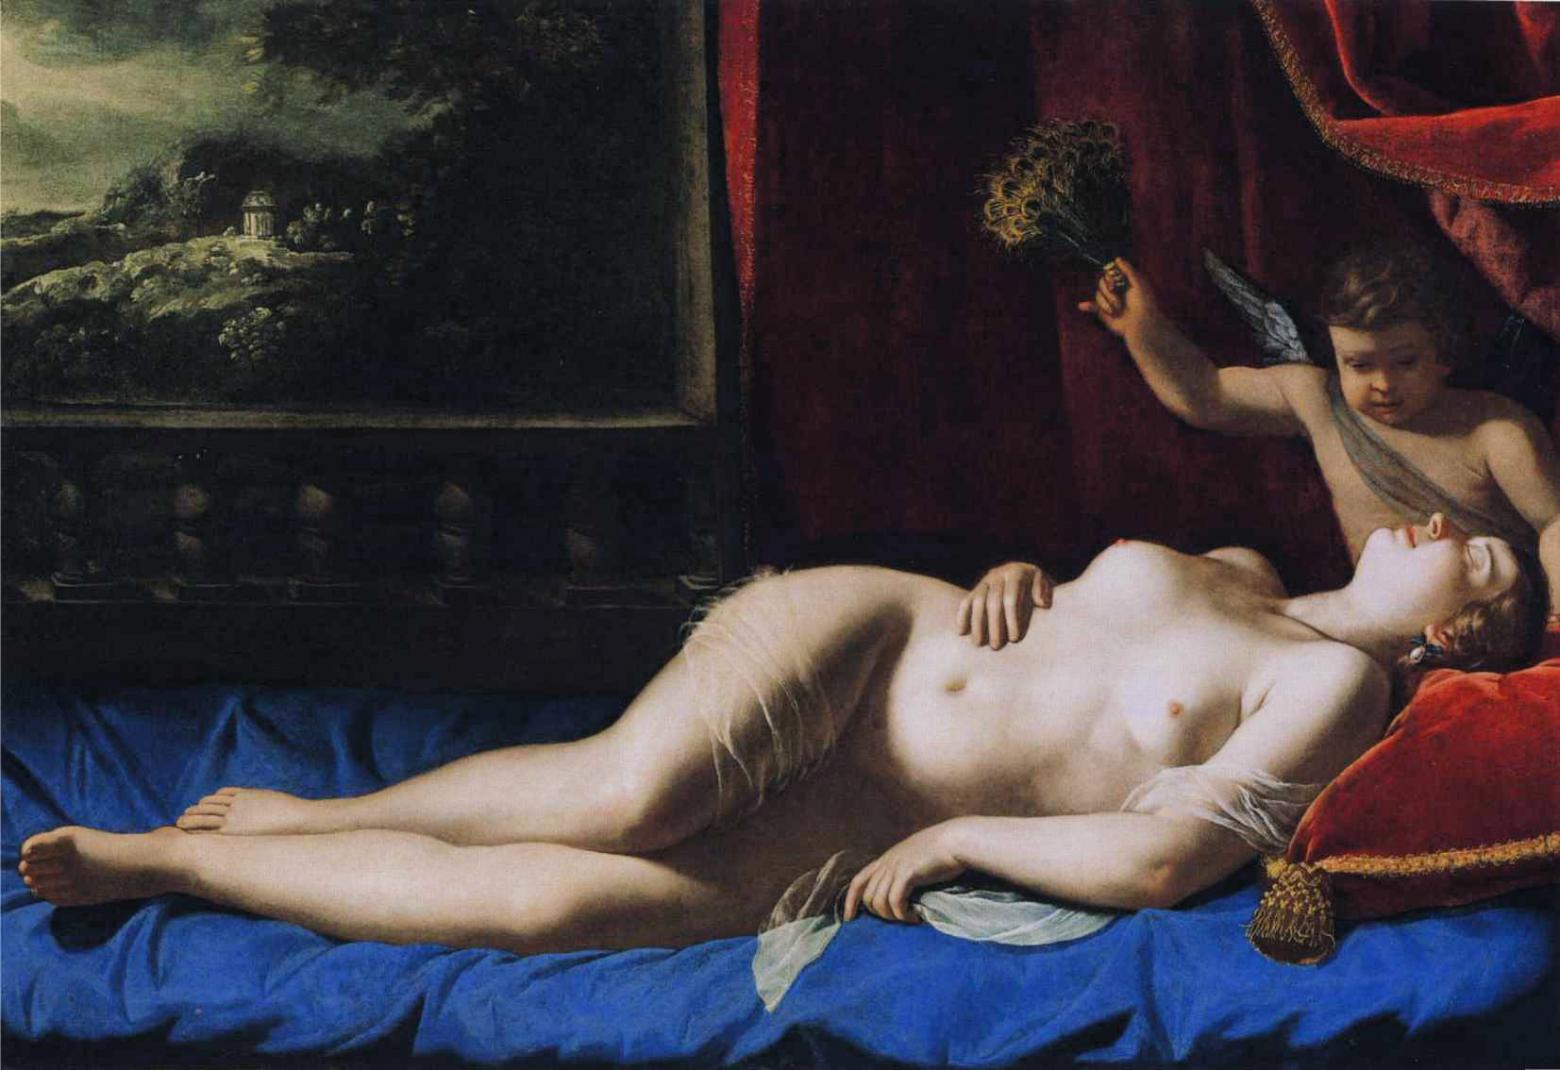 Artemisia Gentileschi "Venus und Amor", 1625-1630